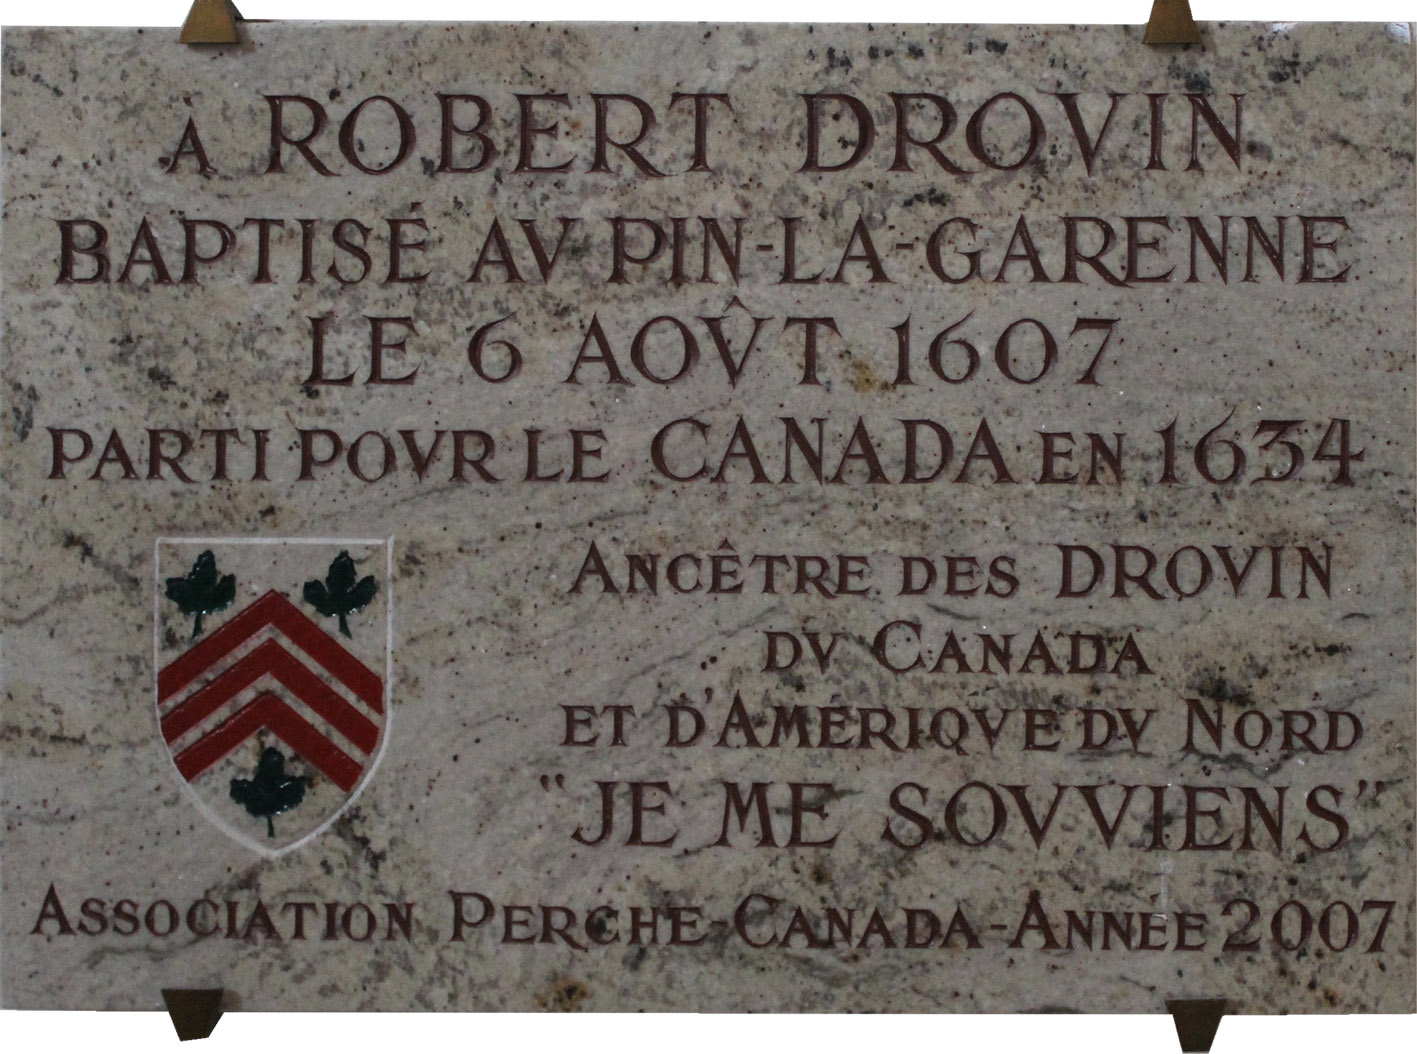 Commemorative plaque in Pin-la-Garenne